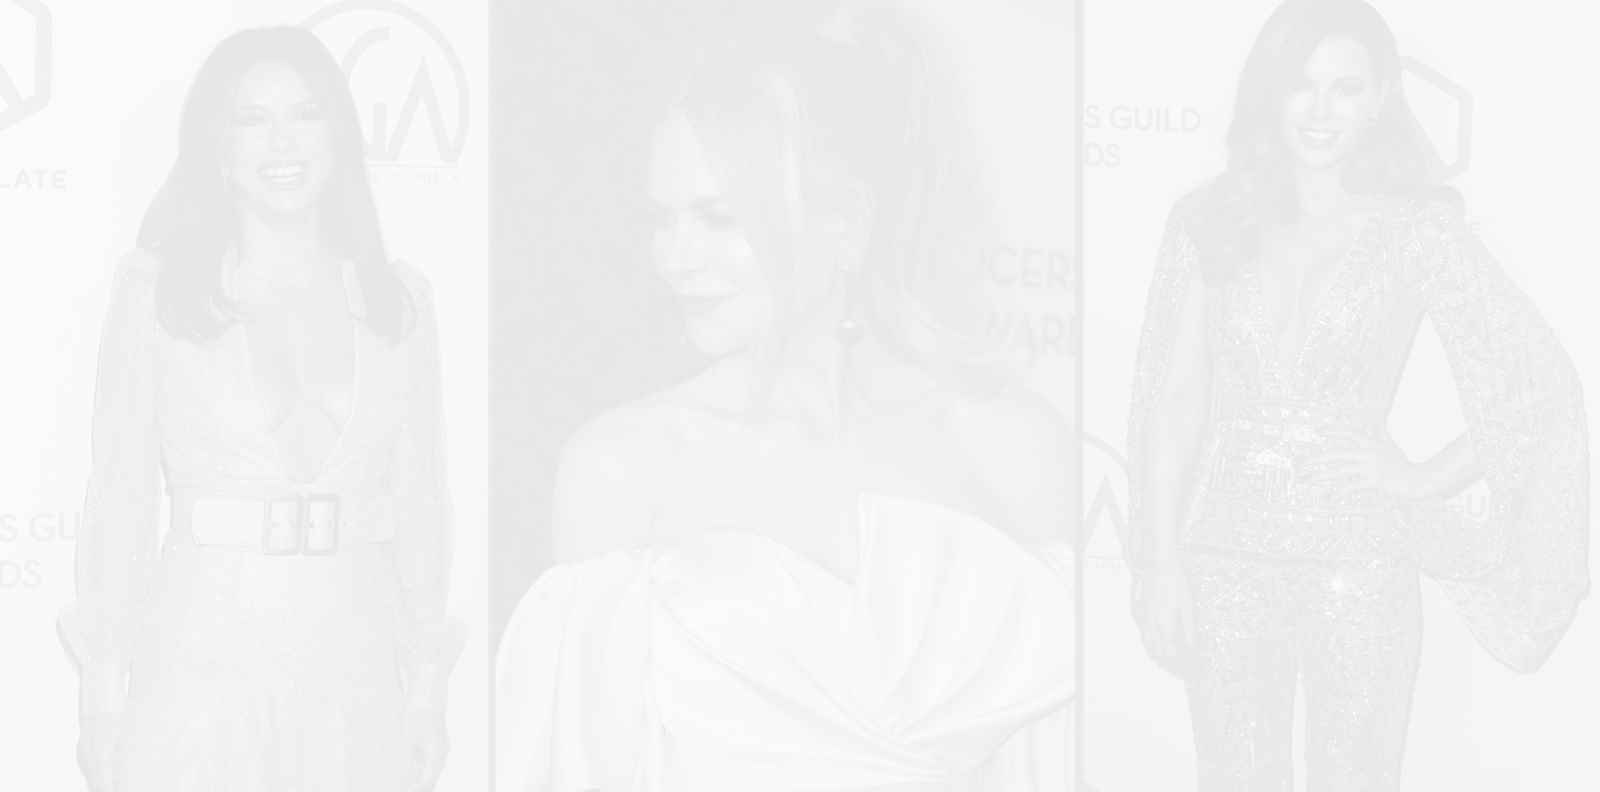 Кейт Бекинсейл, Ева Лонгория и големите победители според Гилдията на продуцентите